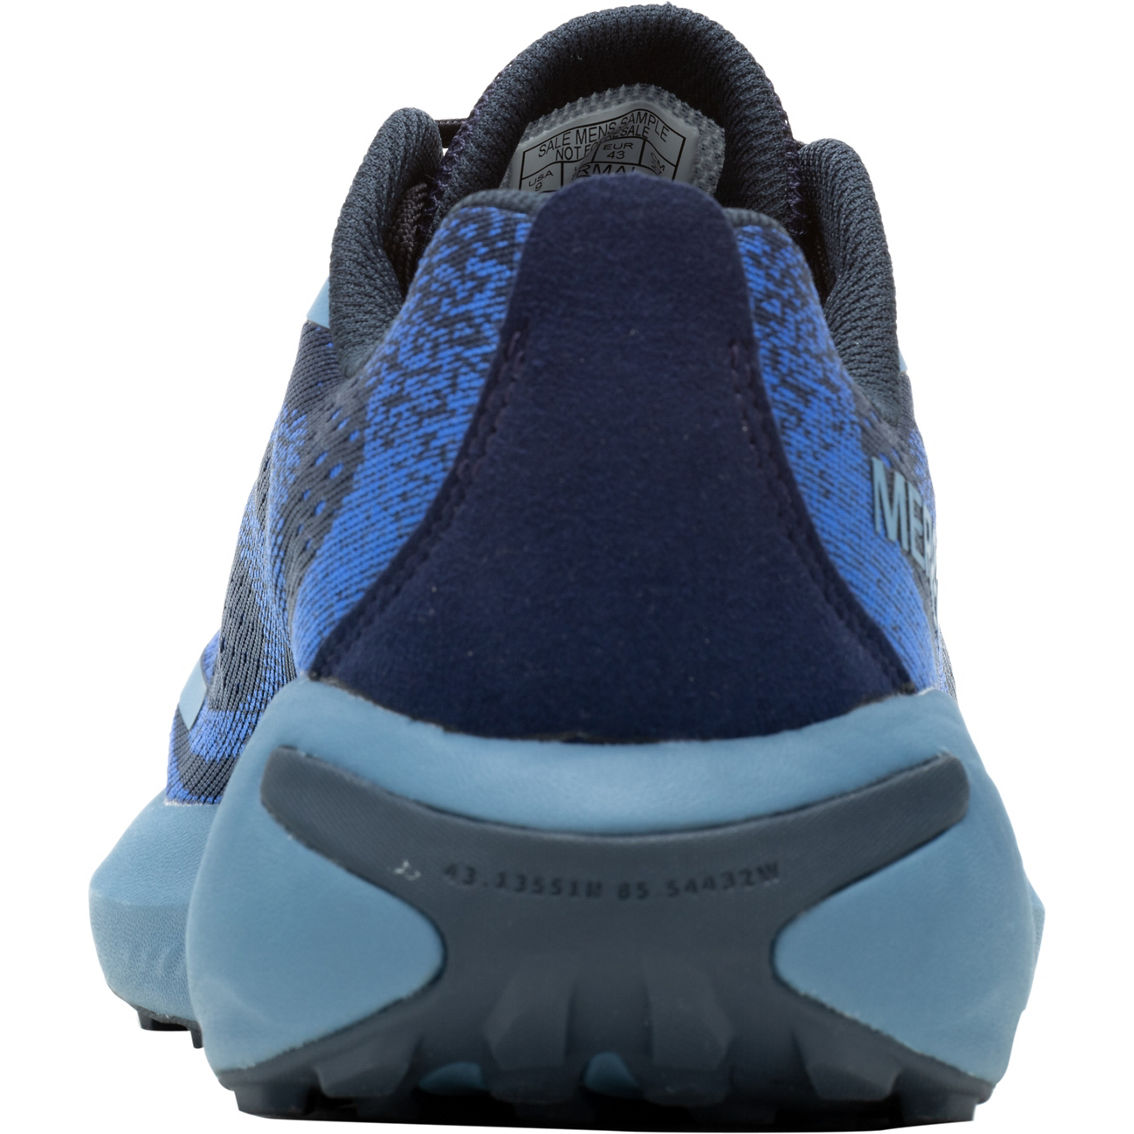 Merrell Men's Morphlite Sea Trail Running Shoes - Image 6 of 6